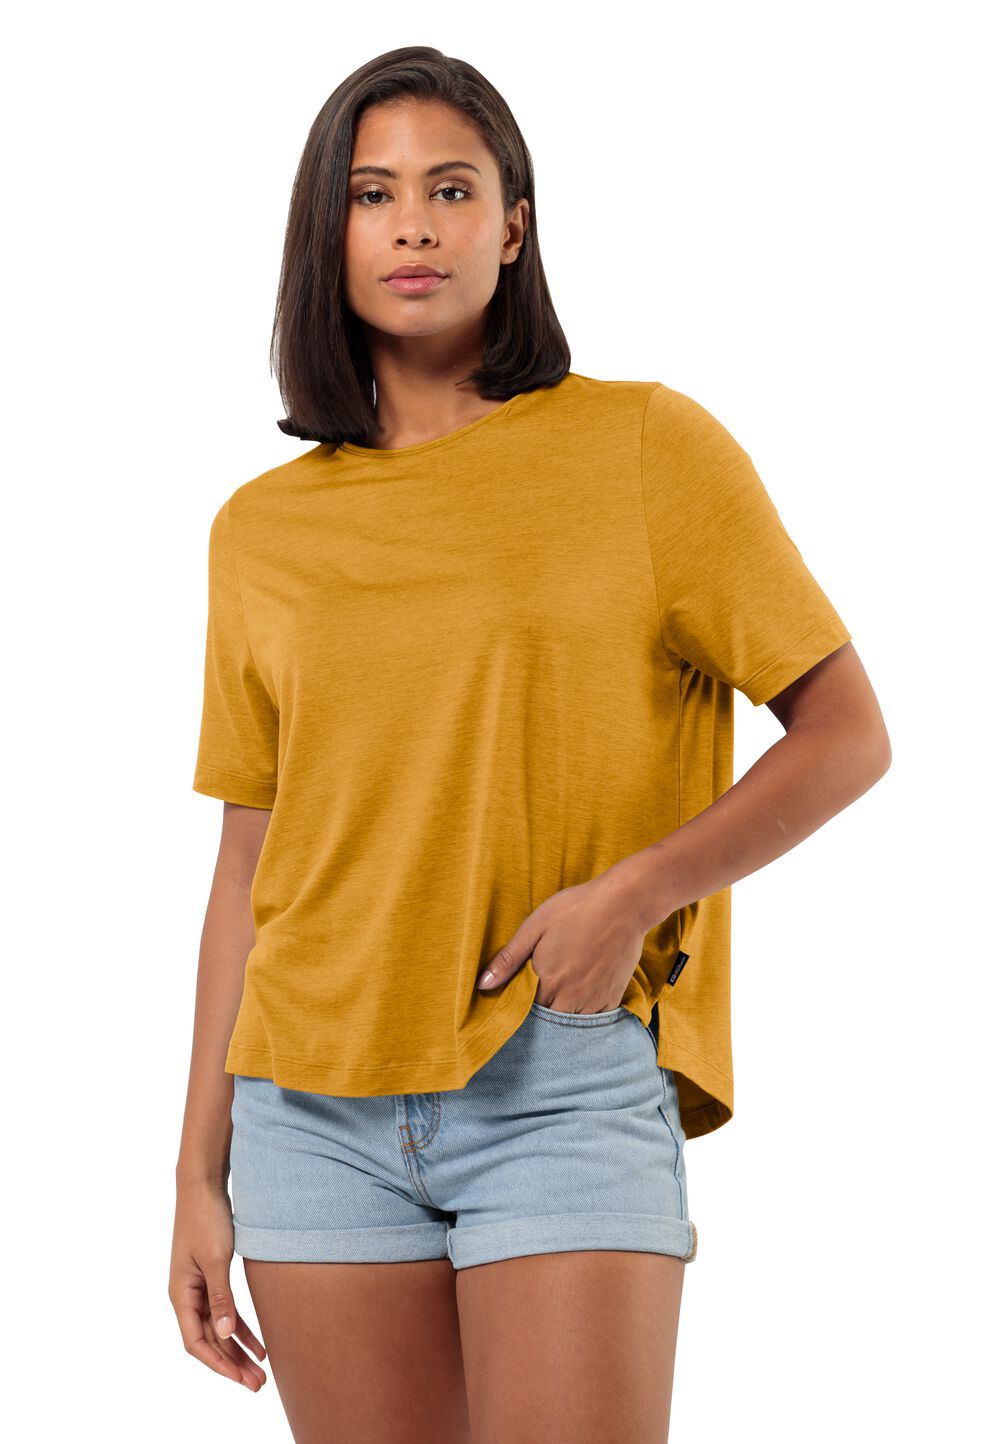 Jack Wolfskin Travel T-Shirt Women Functioneel shirt Dames S bruin curry